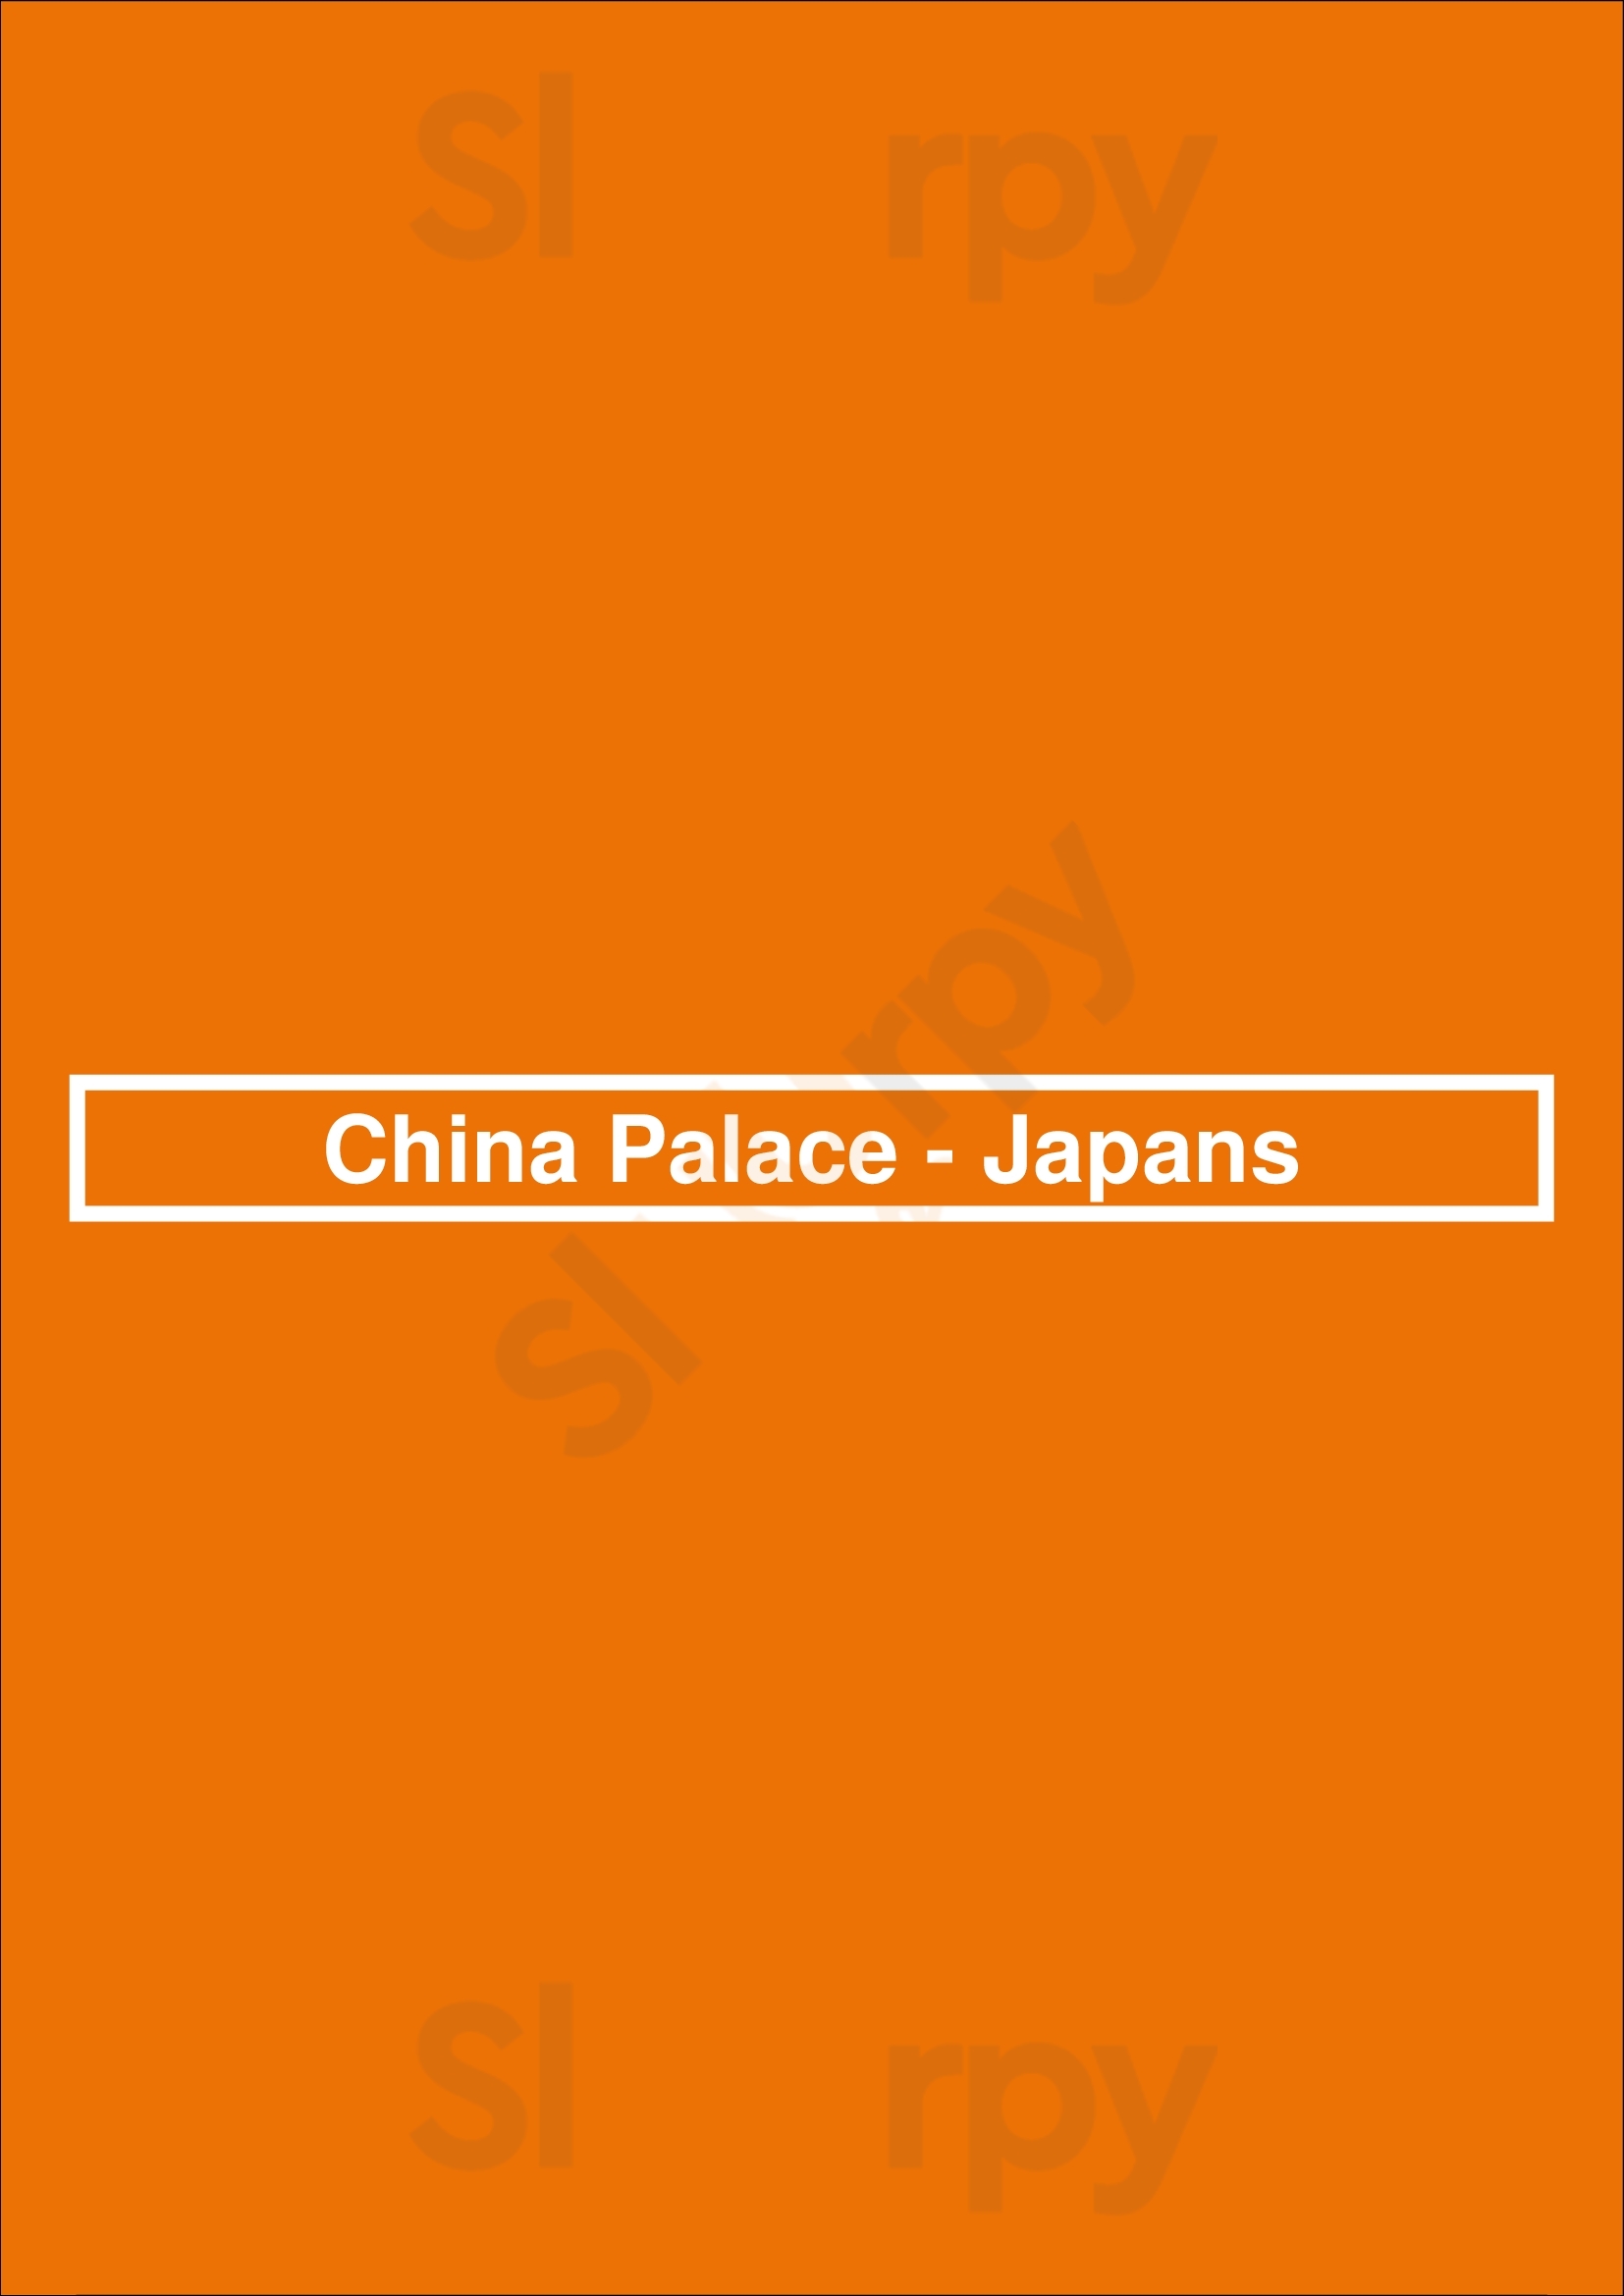 China Palace - Japans Zwolle Menu - 1